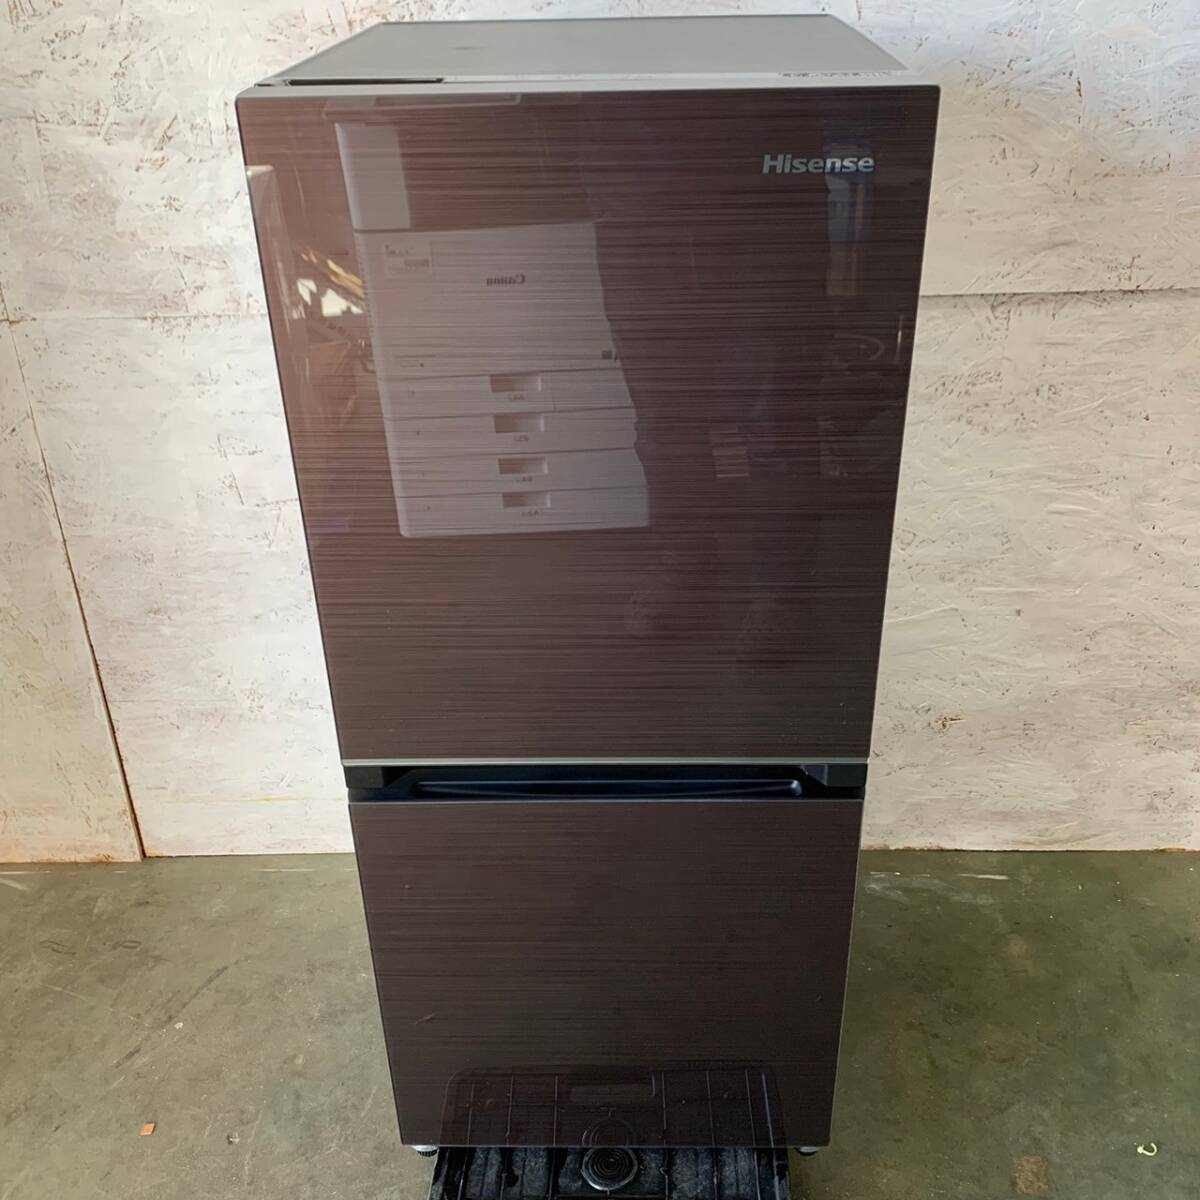 【Hisense】 ハイセンス 2ドア ノンフロン冷凍冷蔵庫 冷蔵庫 134L ダークブラウン HR-G13B-BR 2021年製